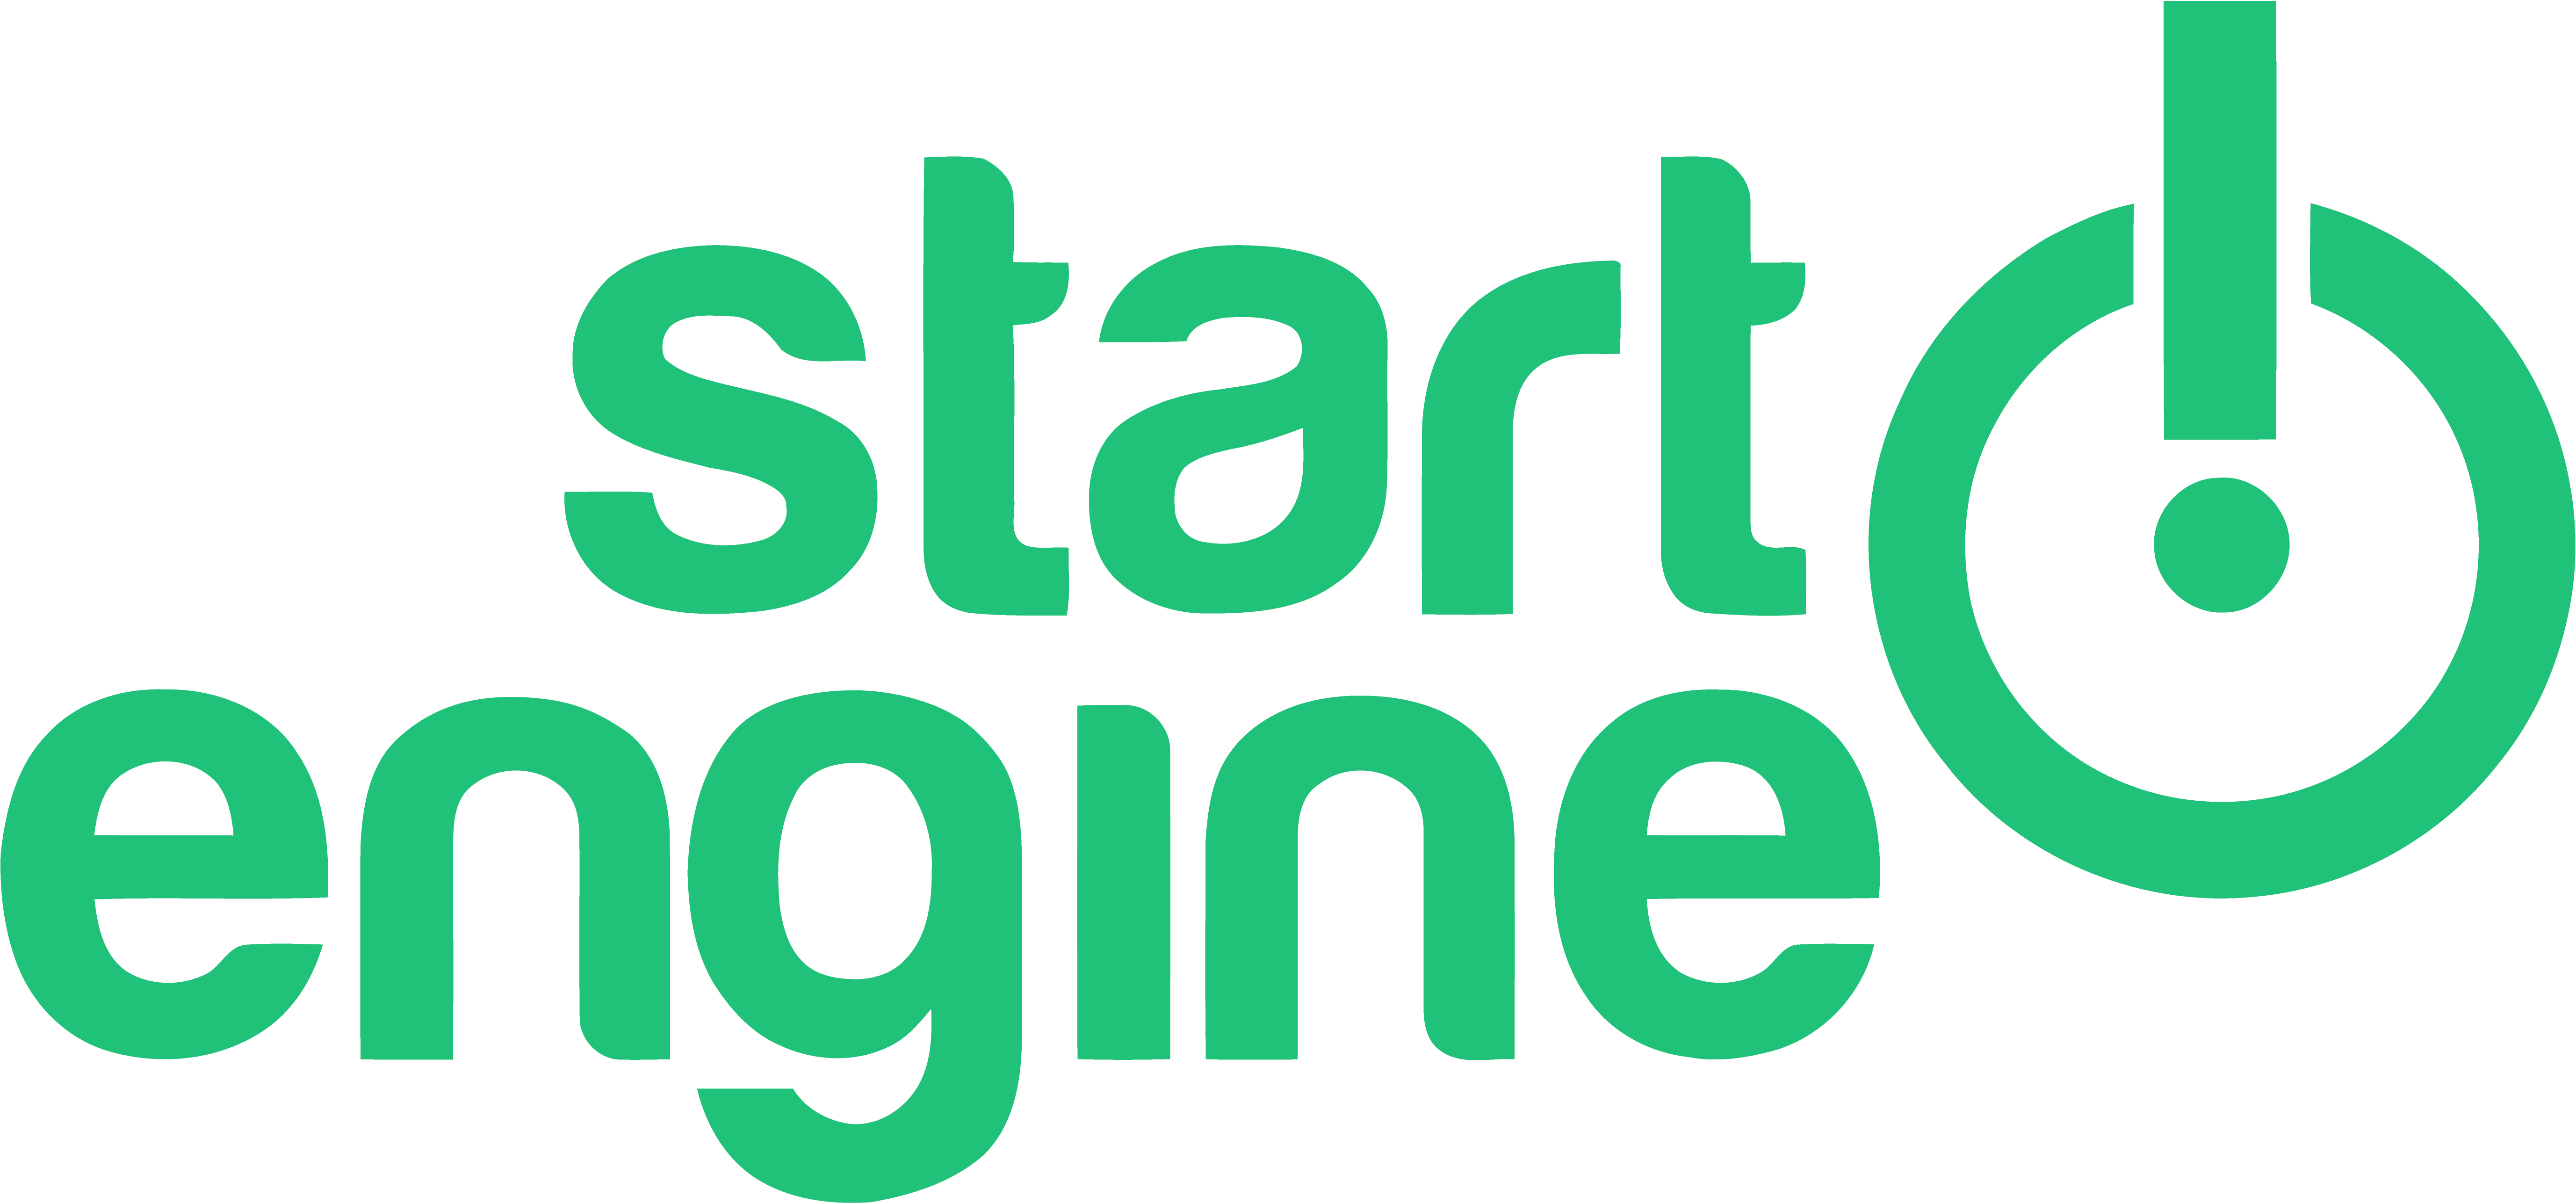 Start Engine